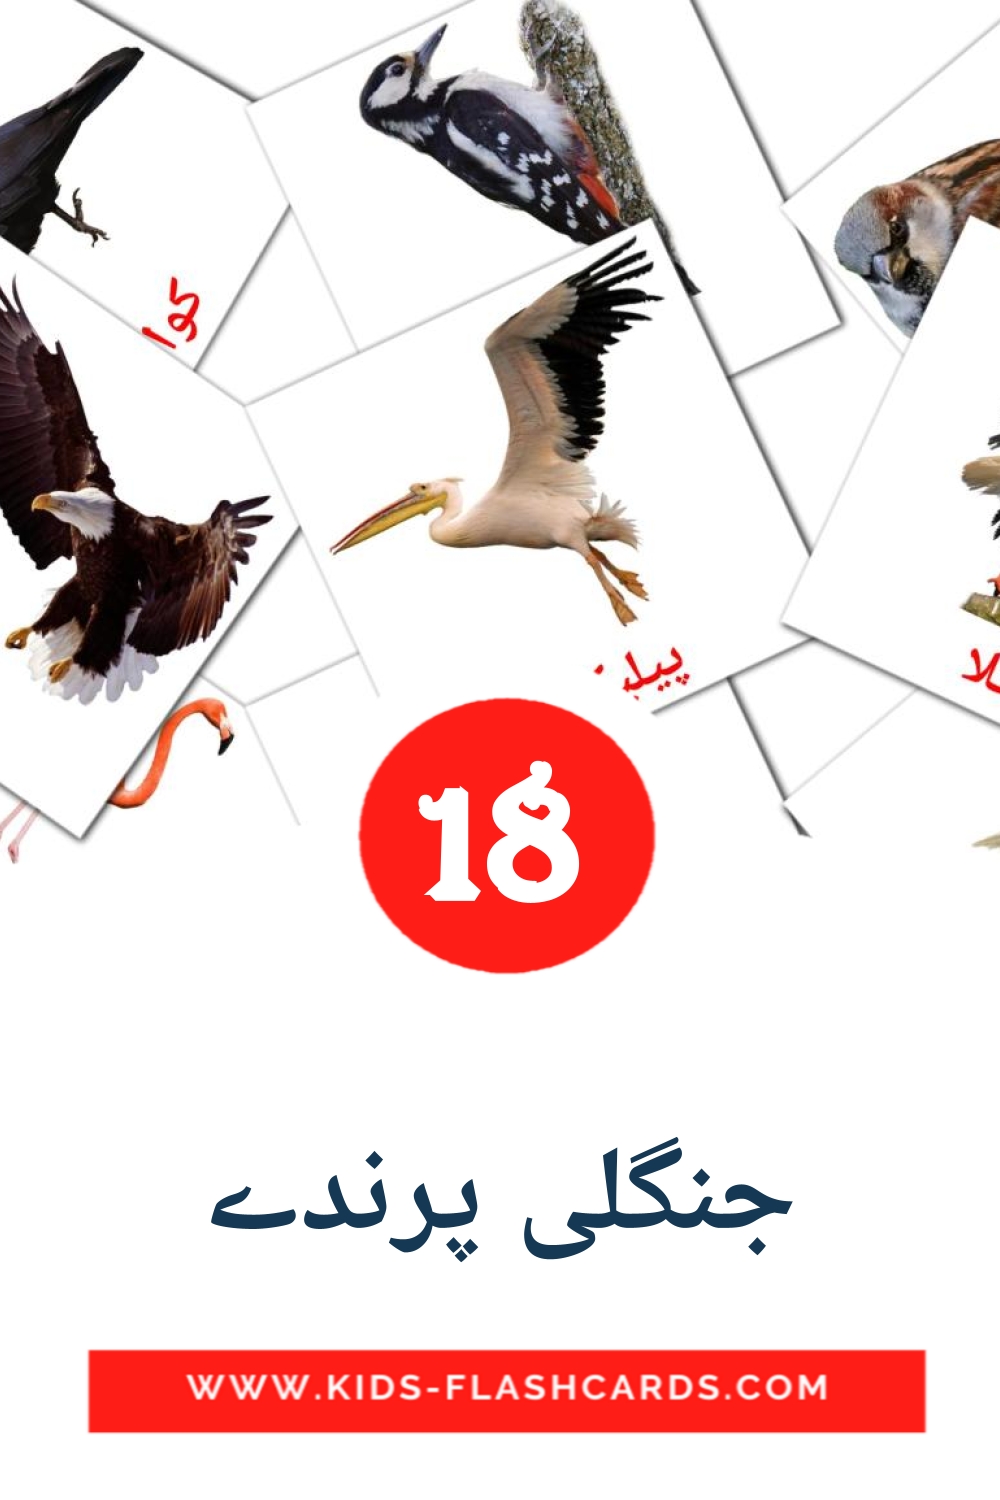 18 Cartões com Imagens de جنگلی پرندے para Jardim de Infância em urdu